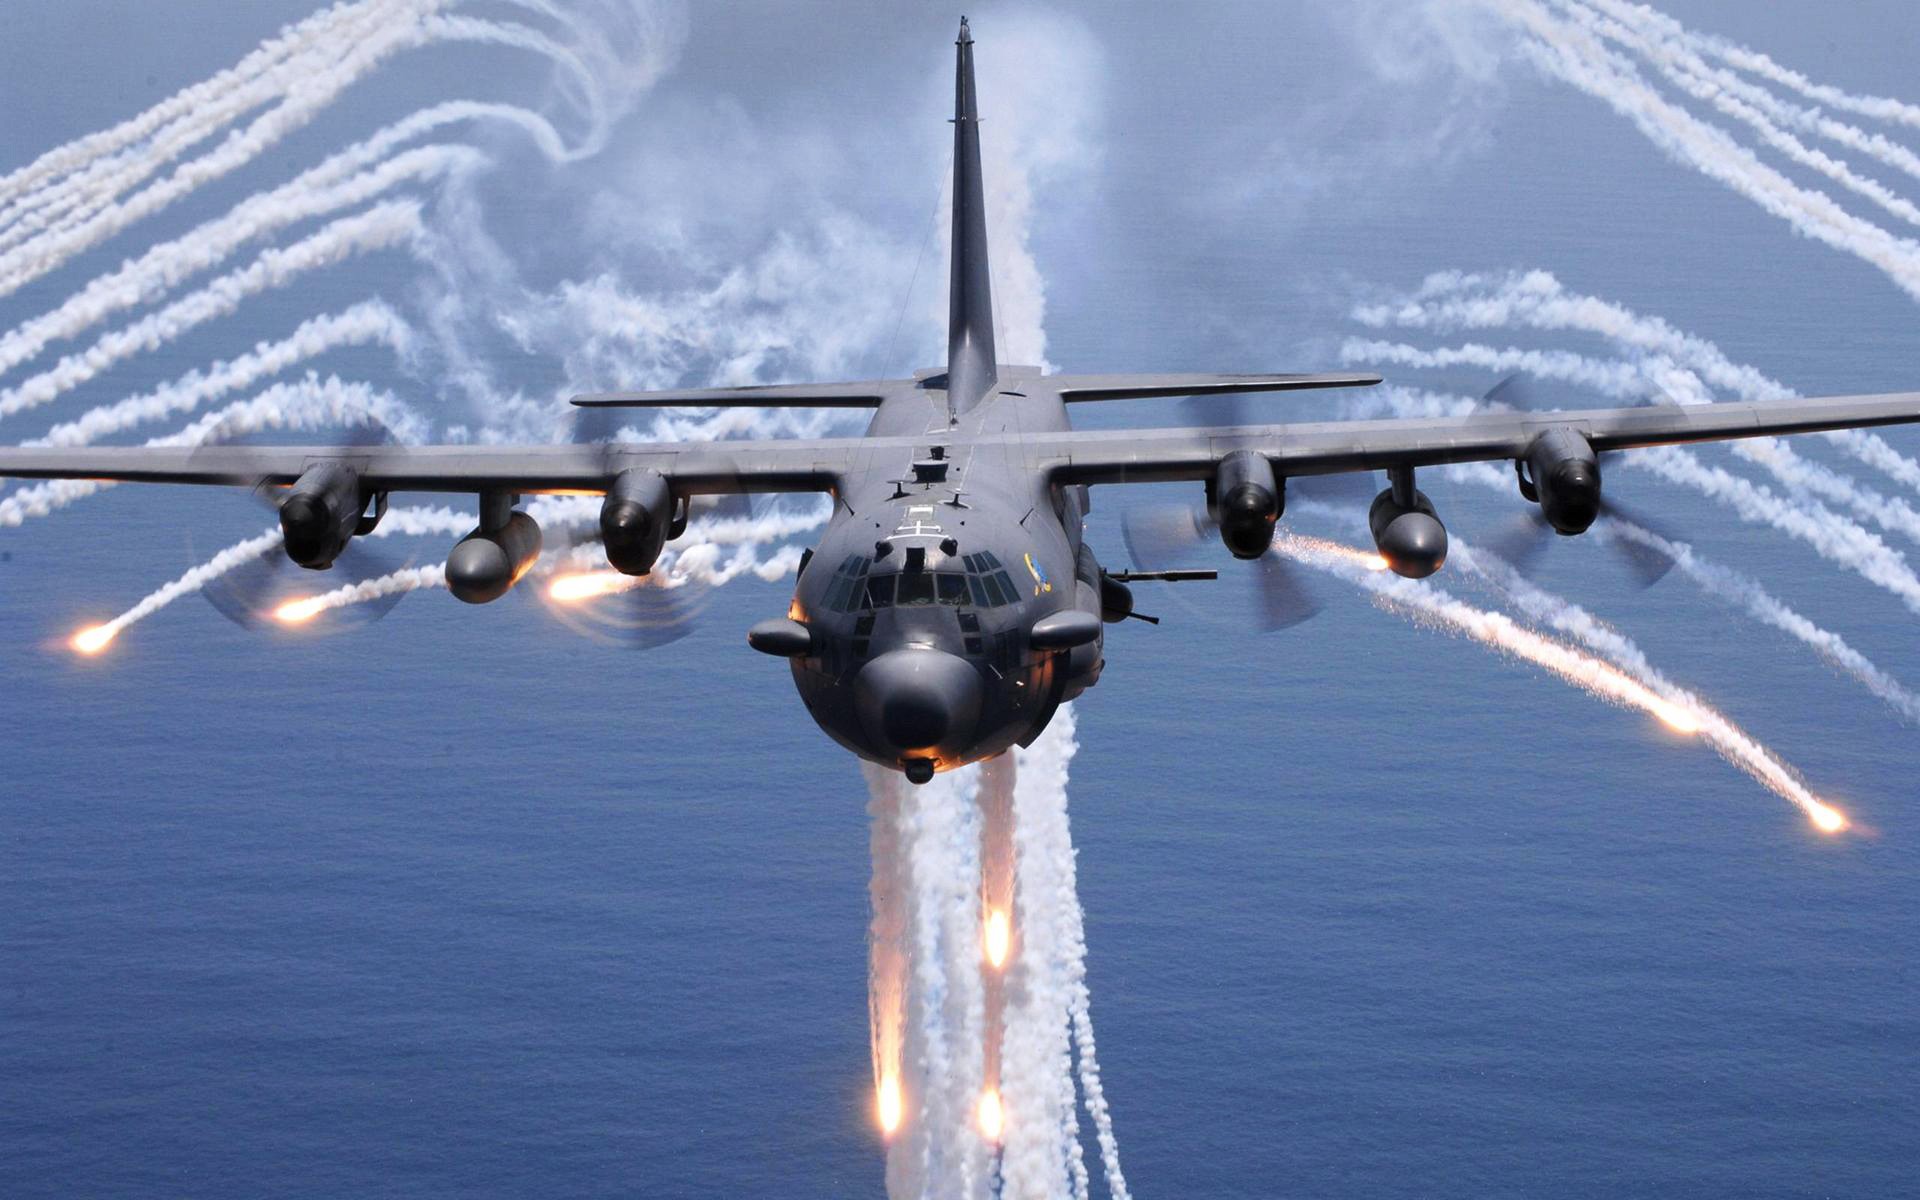 самолет, AC - 130 Spooky / Spectre, вспышки, инверсионных - обои на рабочий стол